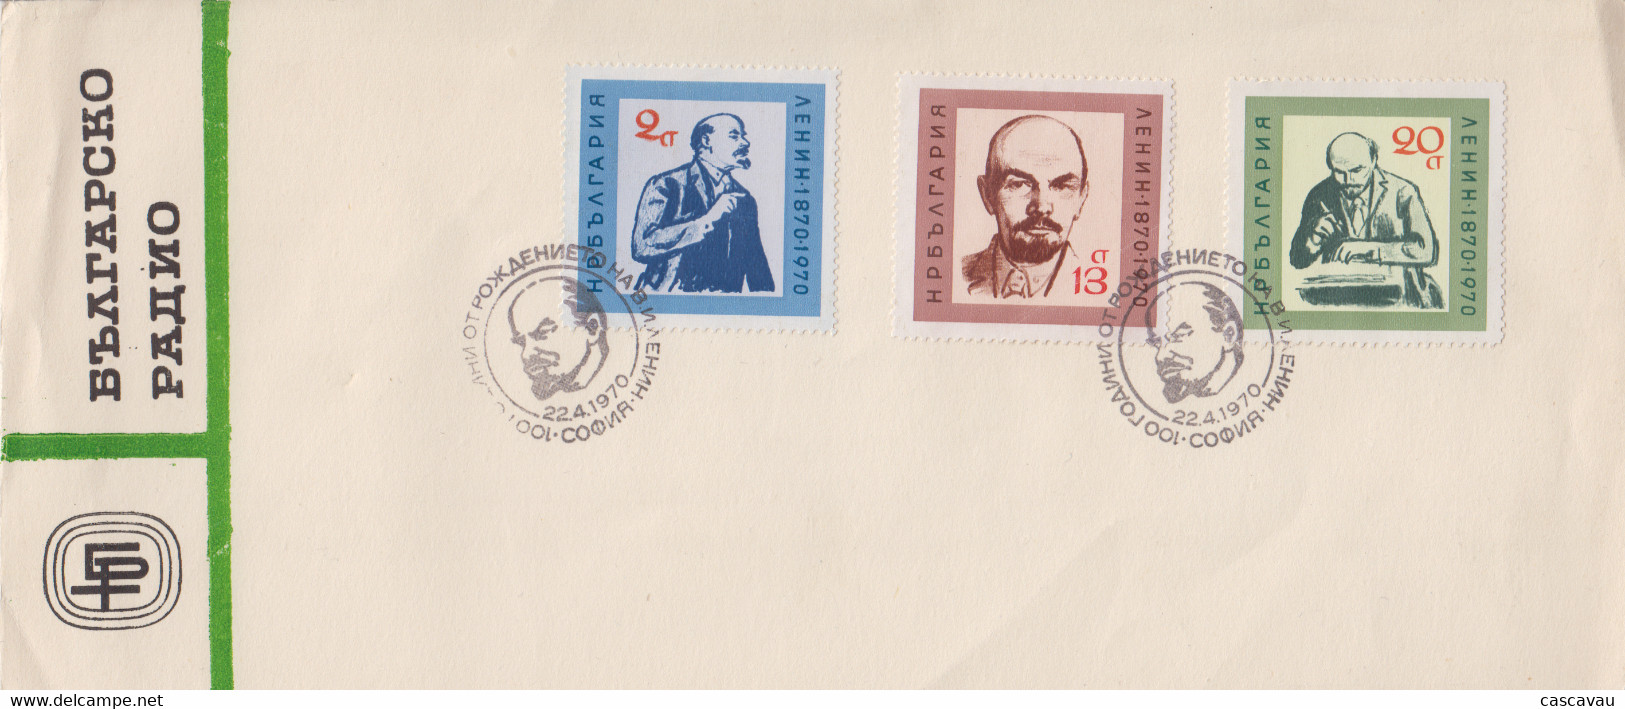 Enveloppe   FDC   1er   Jour    BULGARIE    LENINE     100éme  Anniversaire    1970 - Lenin